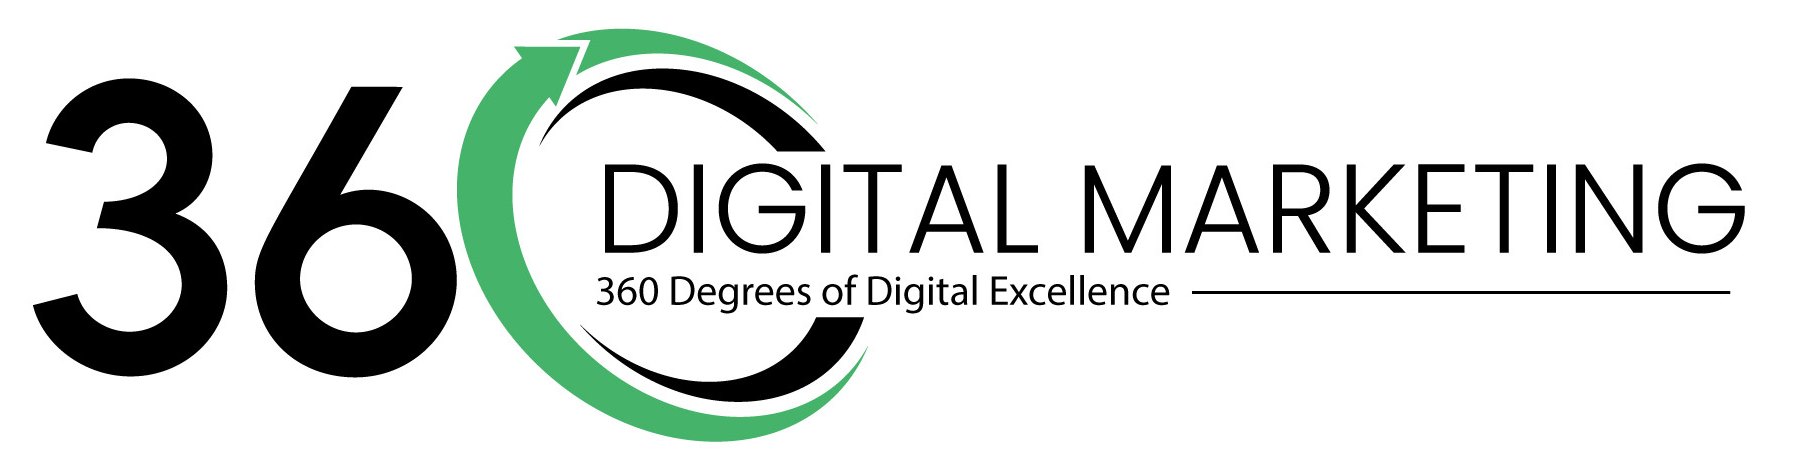 360 Digital Marketing Agency